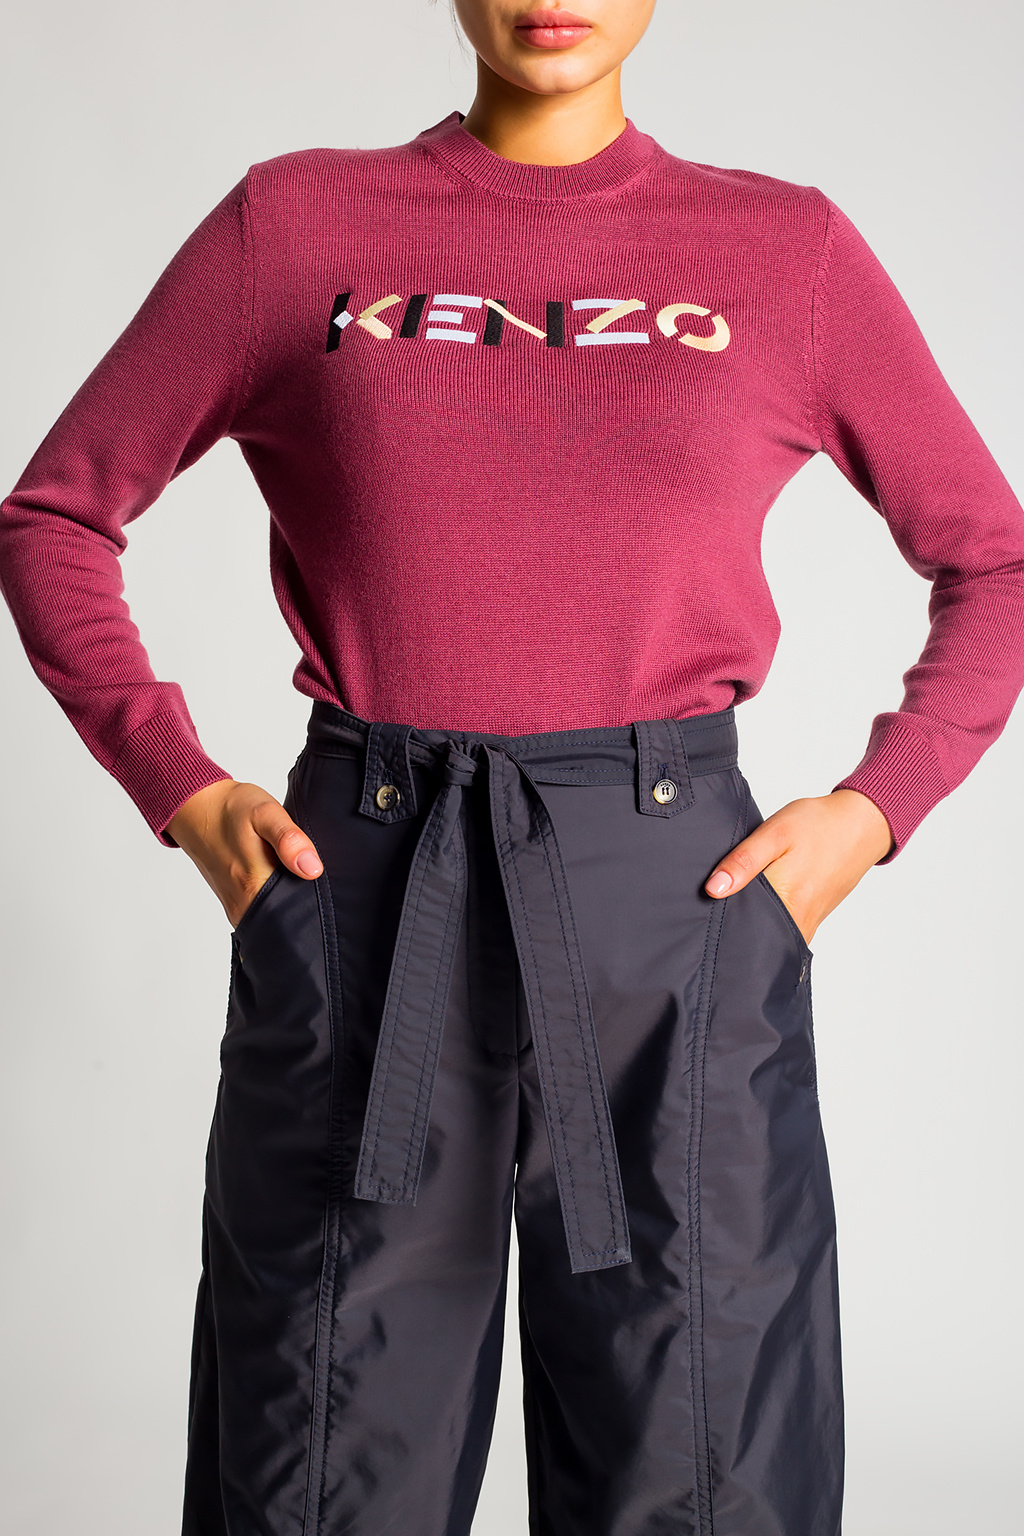 Kenzo viktor & rolf blue sheer shirt